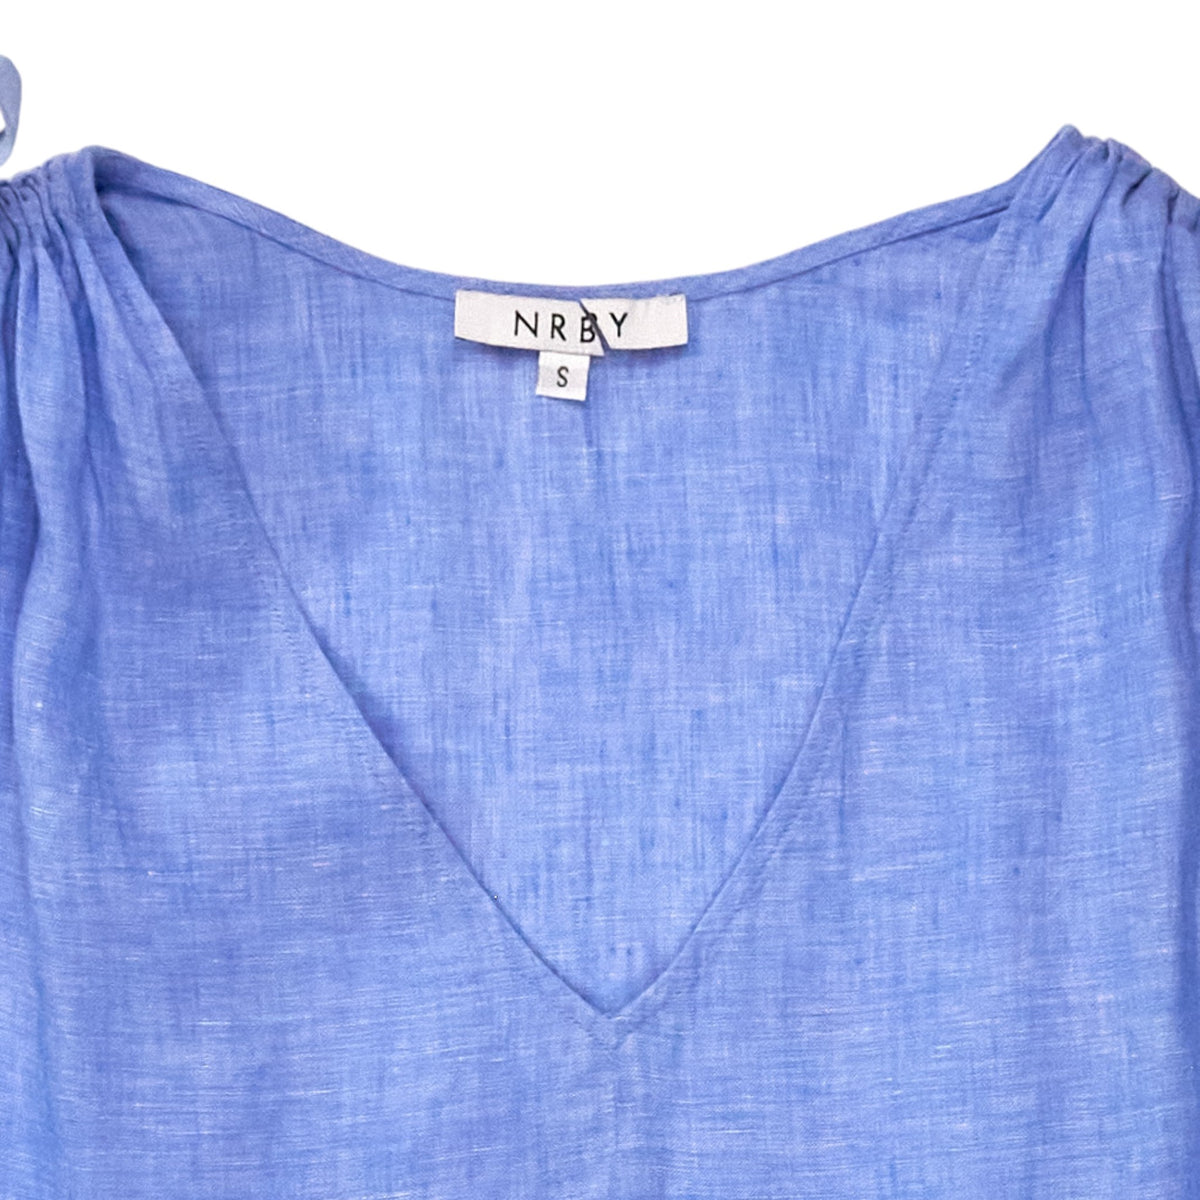 NRBY Blue Linen Sleeveless Dress